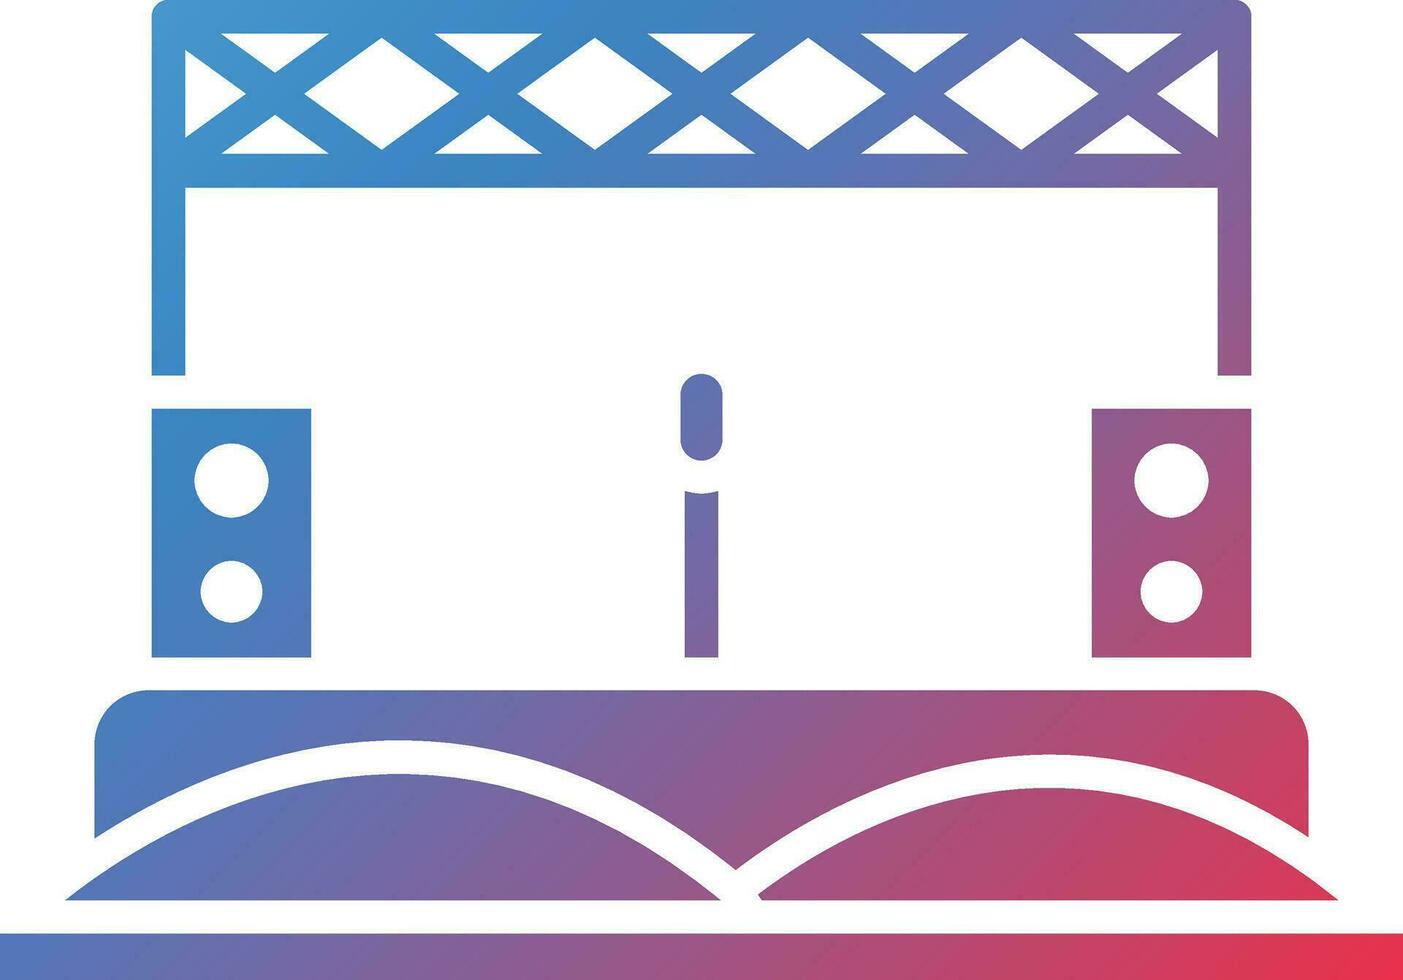 öken- musik festival vektor ikon